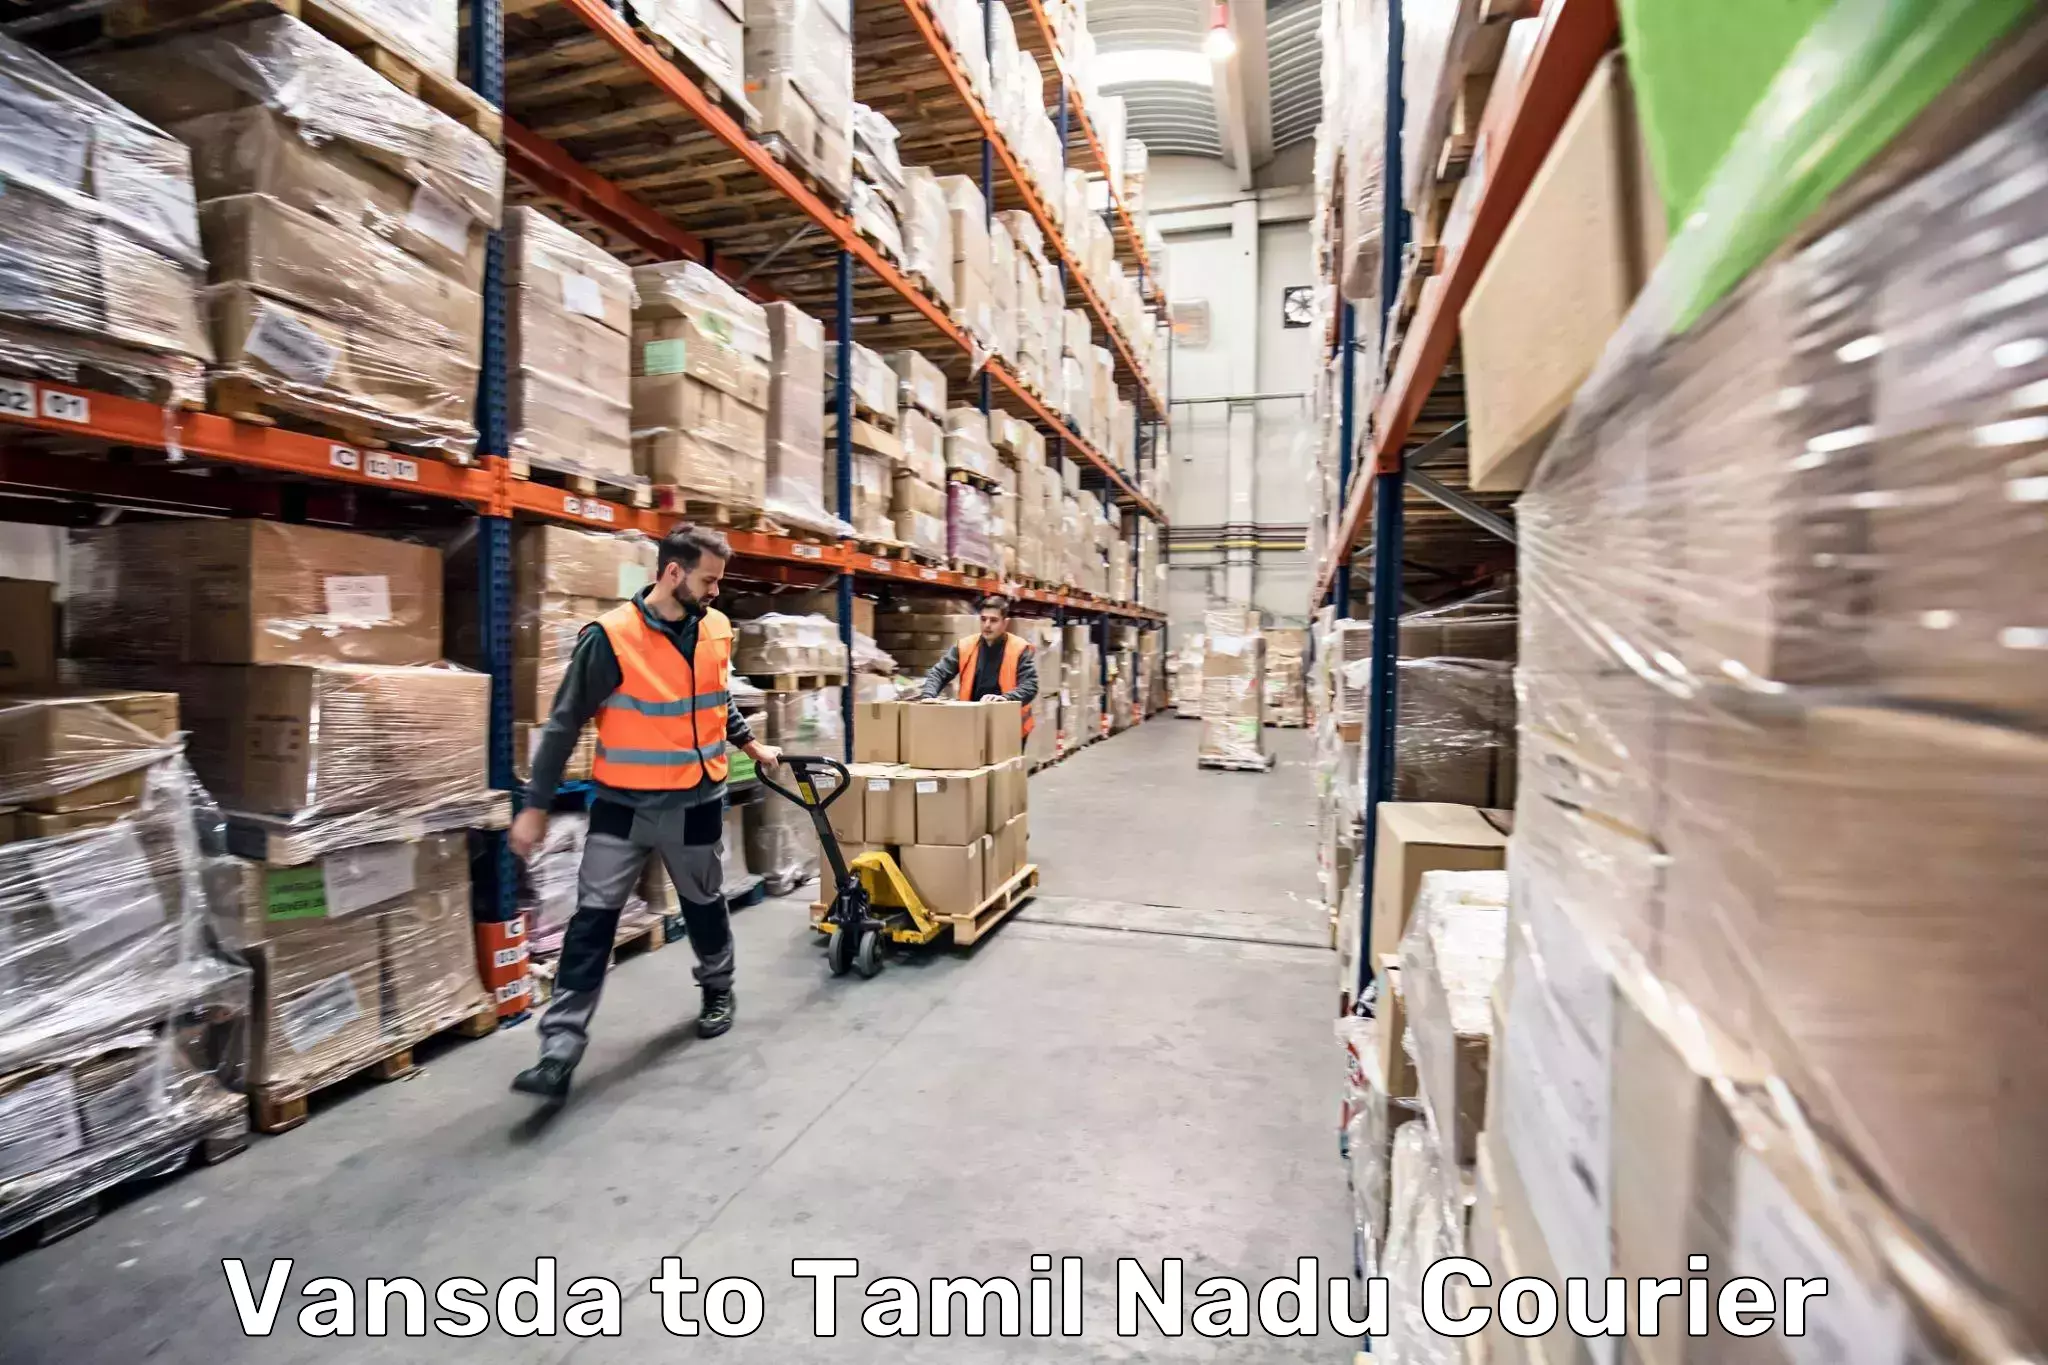 Luggage shipment strategy Vansda to Amrita Vishwa Vidyapeetham Coimbatore